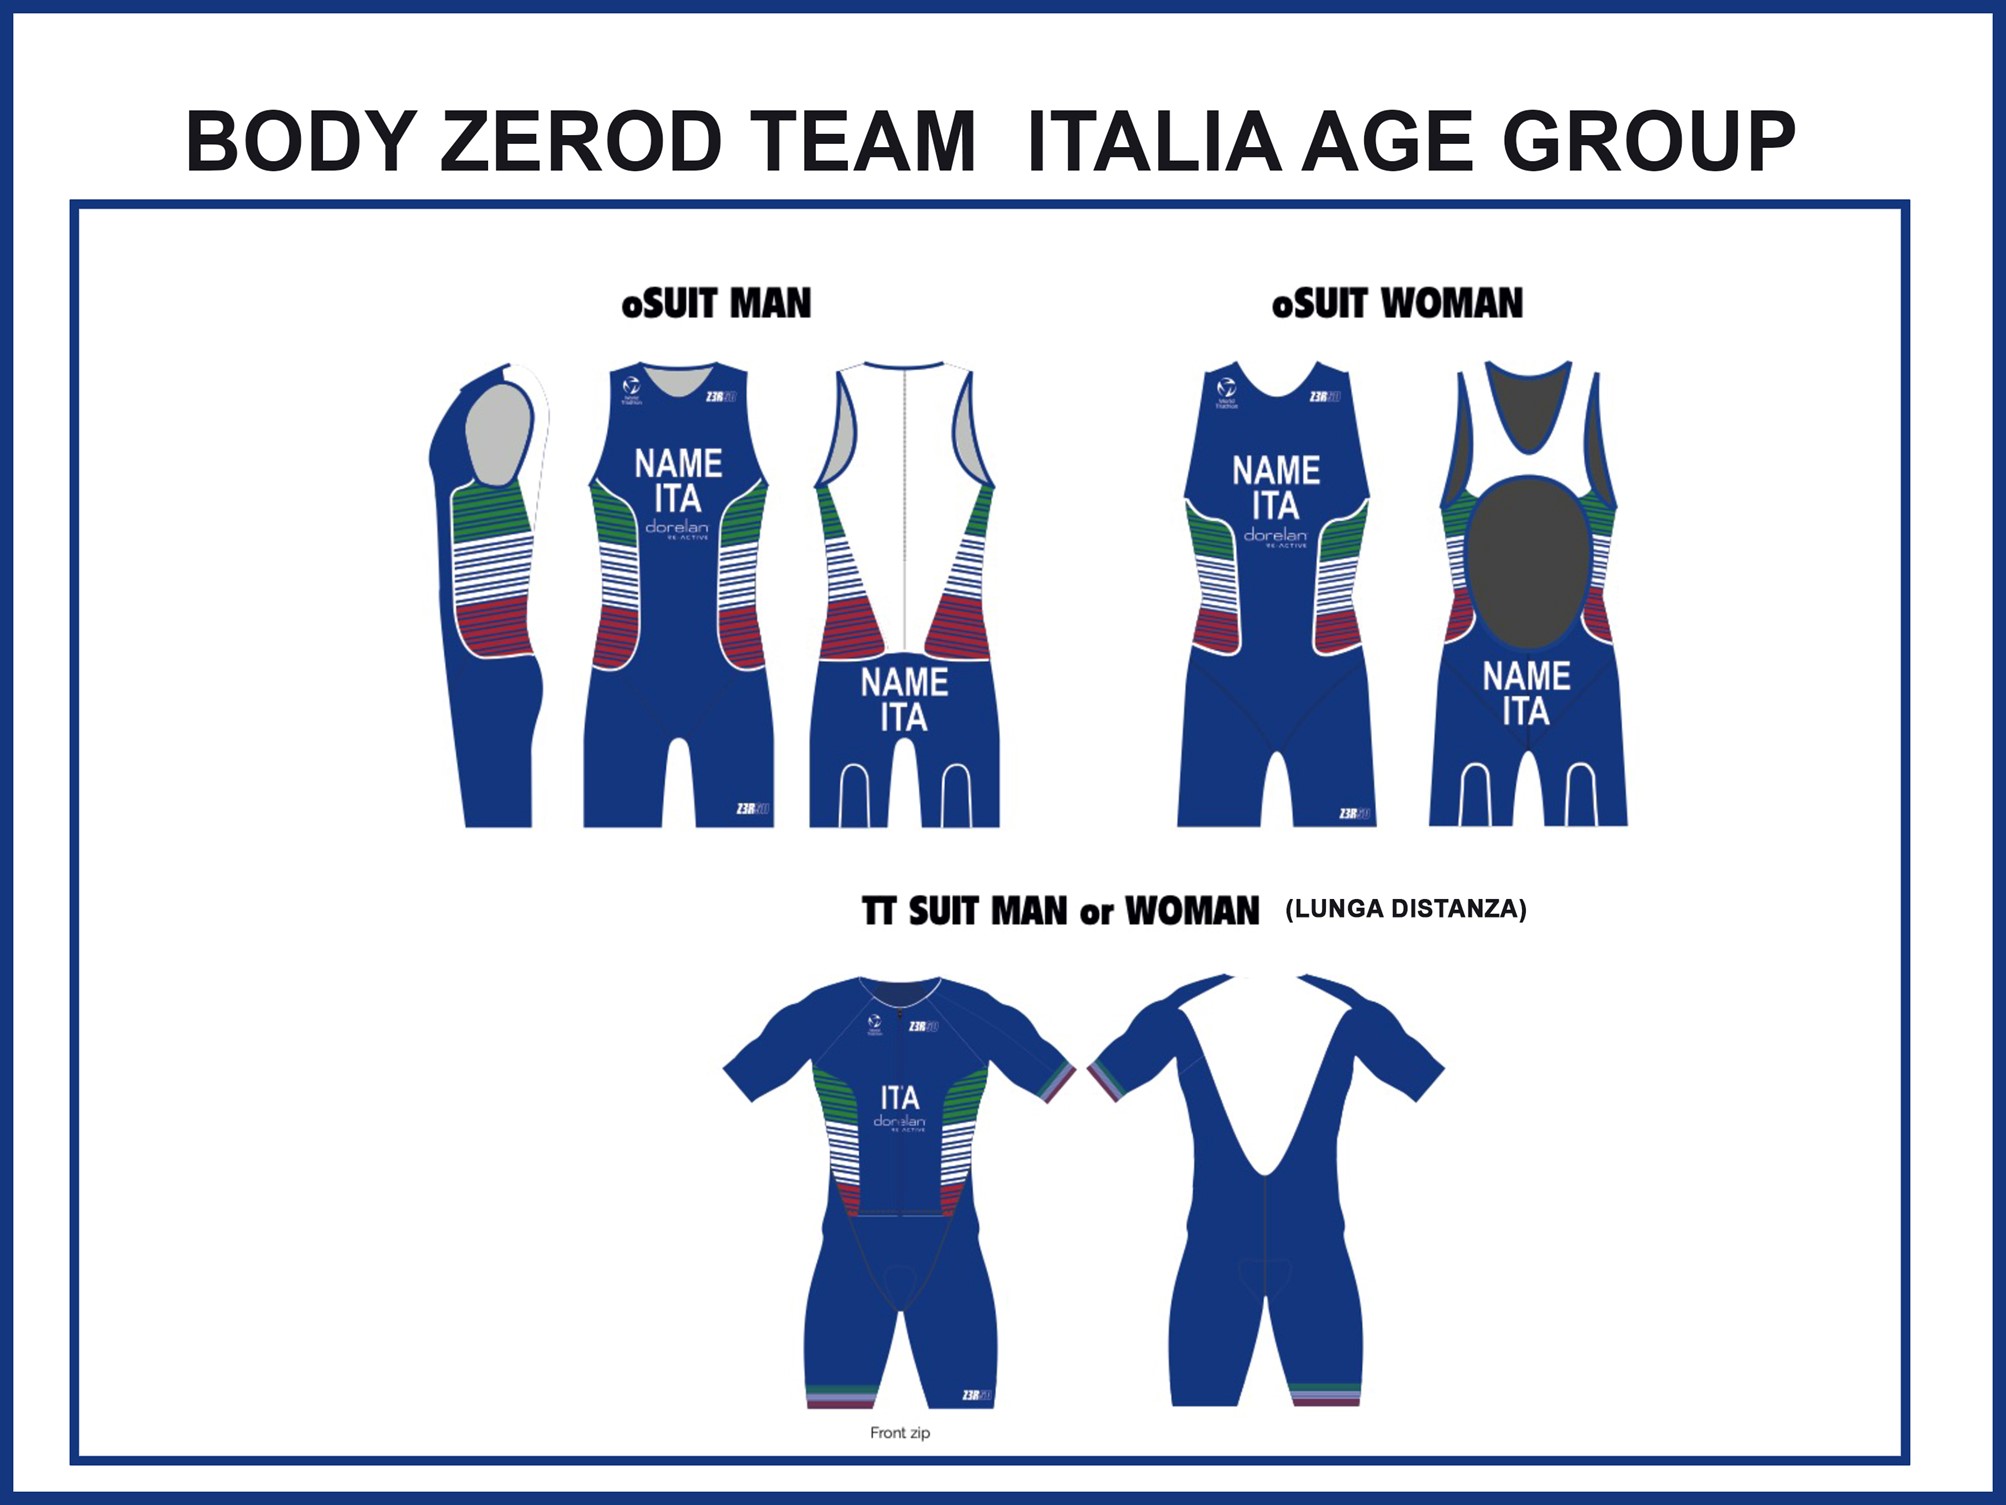 team italia age group 2021 panel